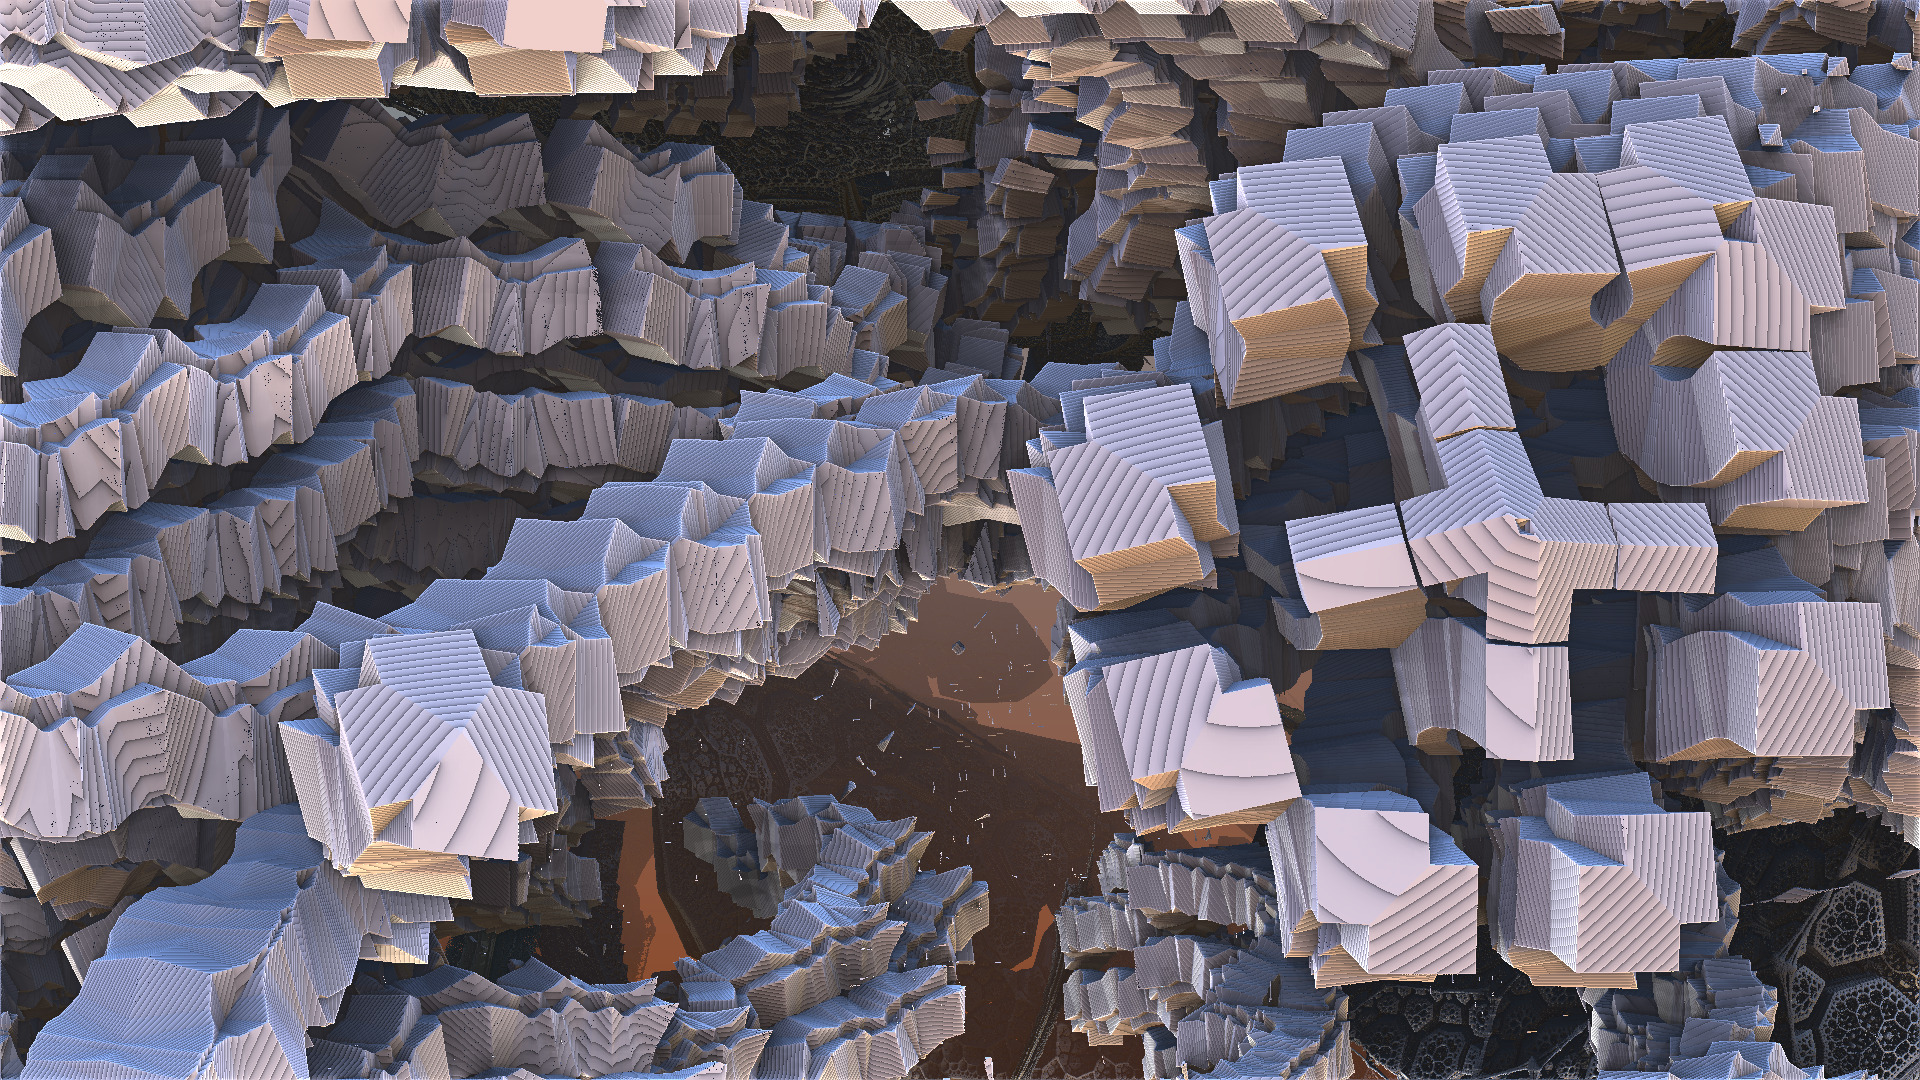 Original fractal 'Nothing left but bones' by Dainbramage, alternate camera angle by ScrambledRubiks